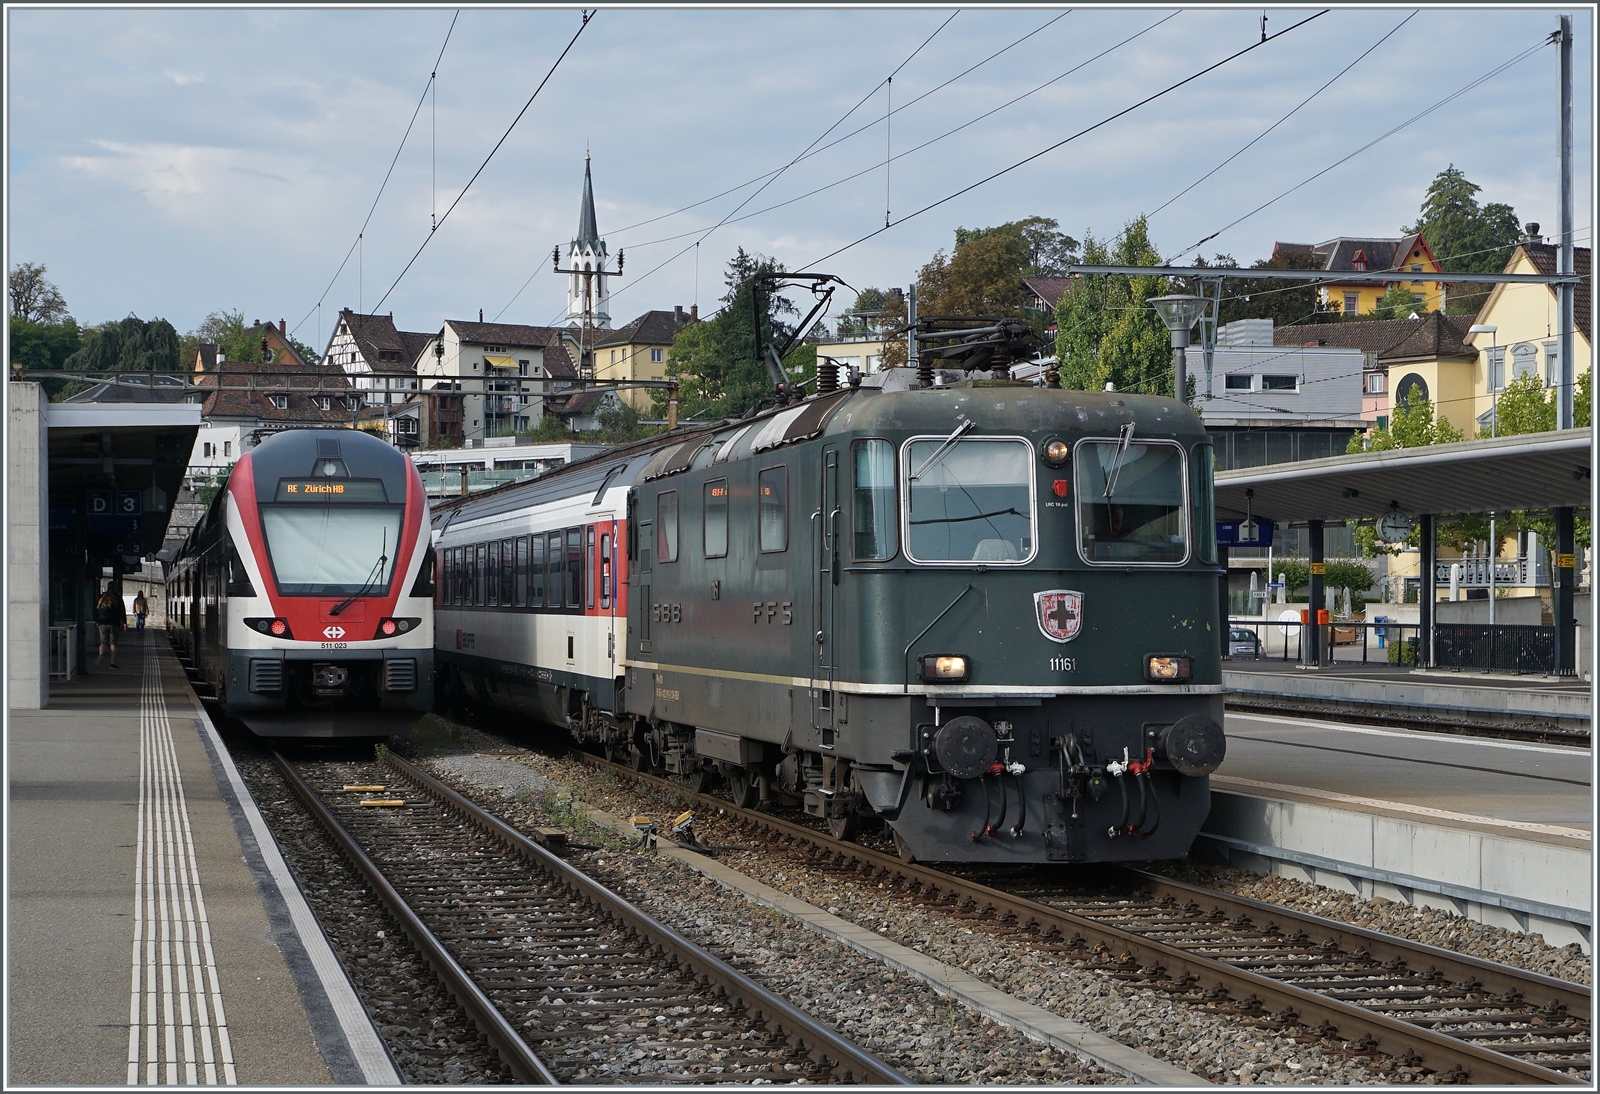 Die SBB Re 4/4 II wartet mit ihrem IC 4 nach Singen in Schaffhausen auf die baldige Weiterfahrt, während der SBB RABe 511 023 als RE nach Zürich fahren wird.

9. Sept. 2022